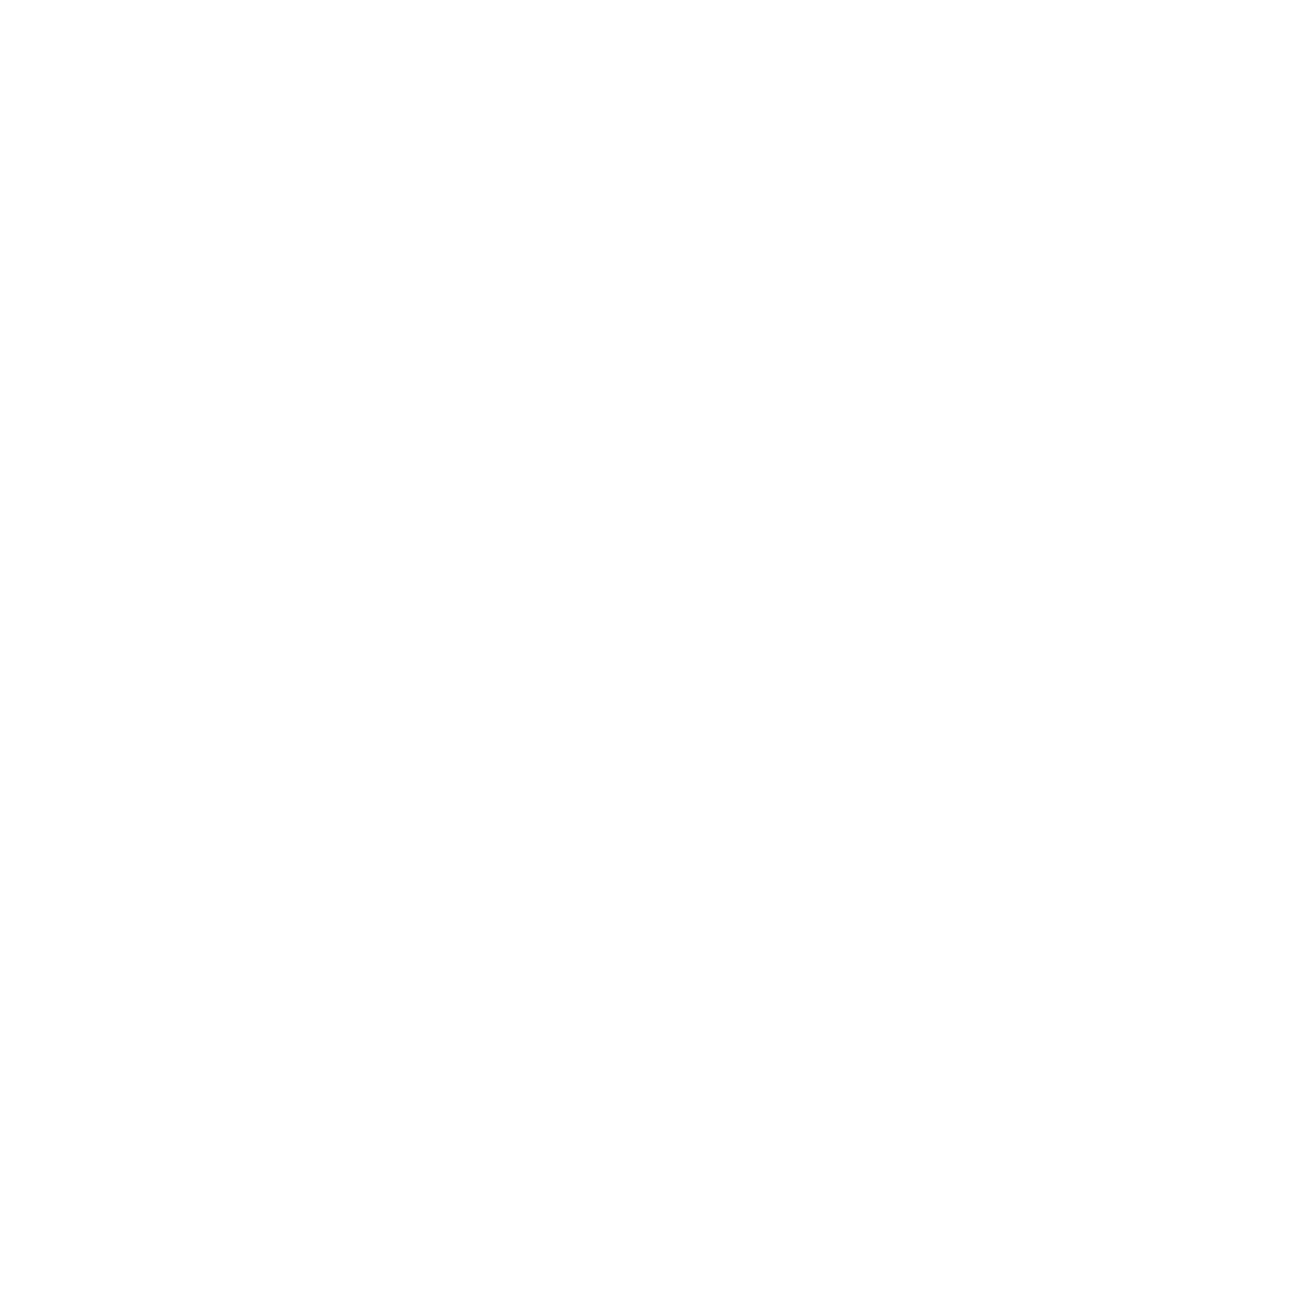 Oldgoat 50/50/30 - Old Goat 50 (1350x1350), Png Download